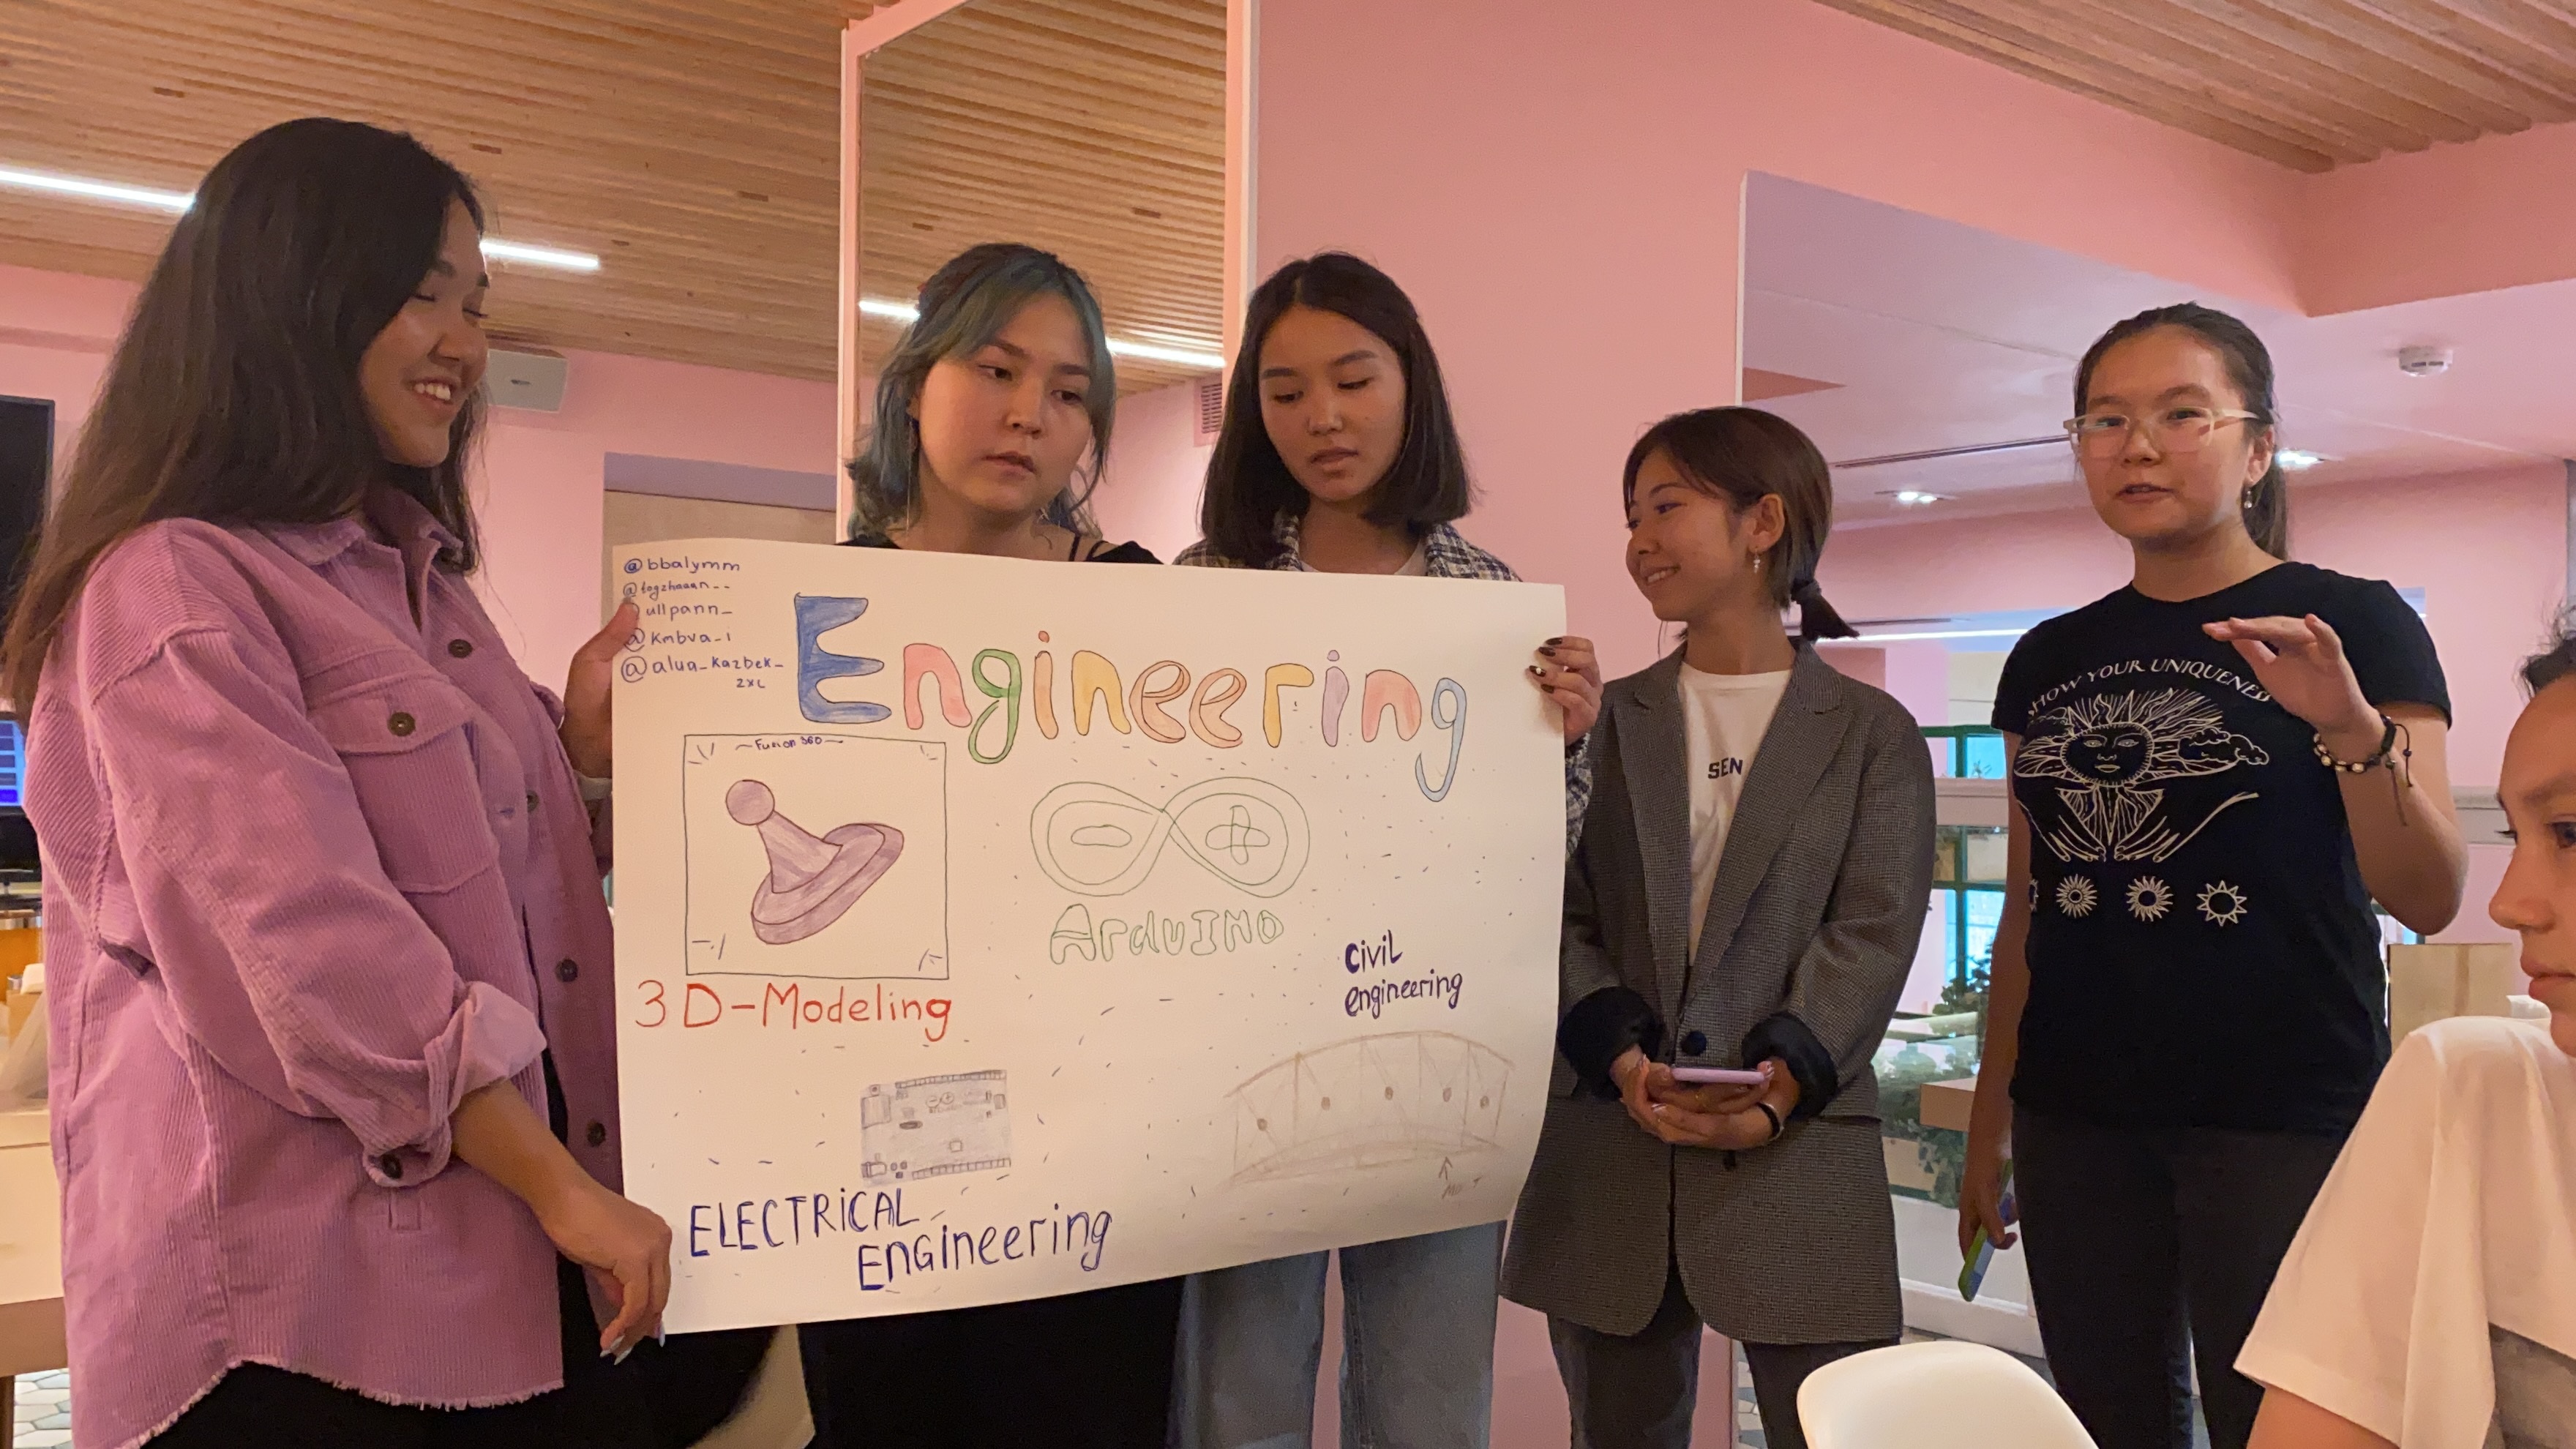 Компания Otis поддерживает проект “Женщины в инженерной сфере” Фонда Социального Развития Назарбаев Университета